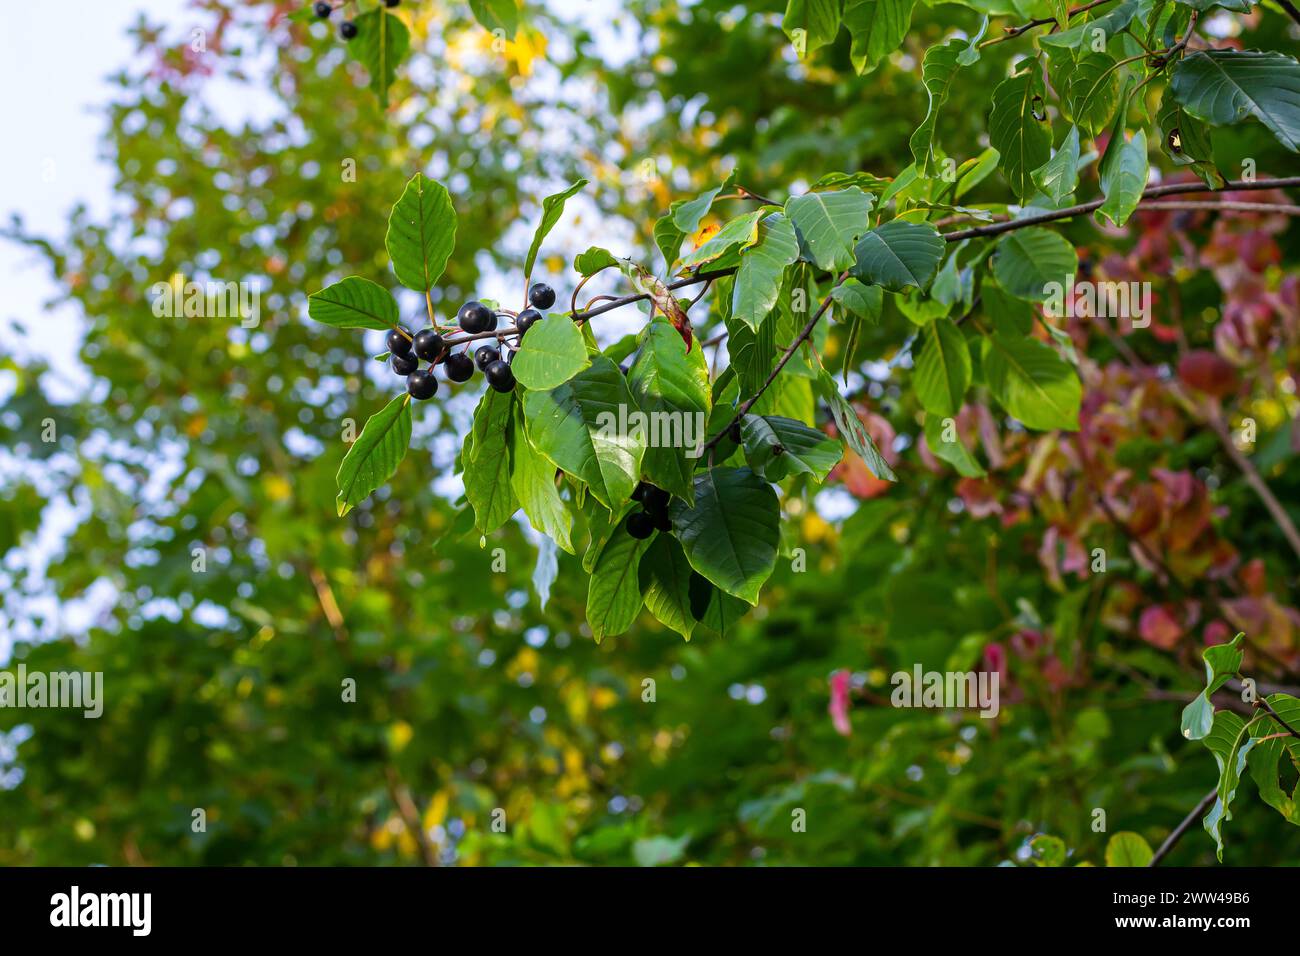 Blätter und Früchte des Heilstrauchs Frangula alnus, Rhamnus frangula mit giftiger schwarzer und roter Beerennaht. Stockfoto